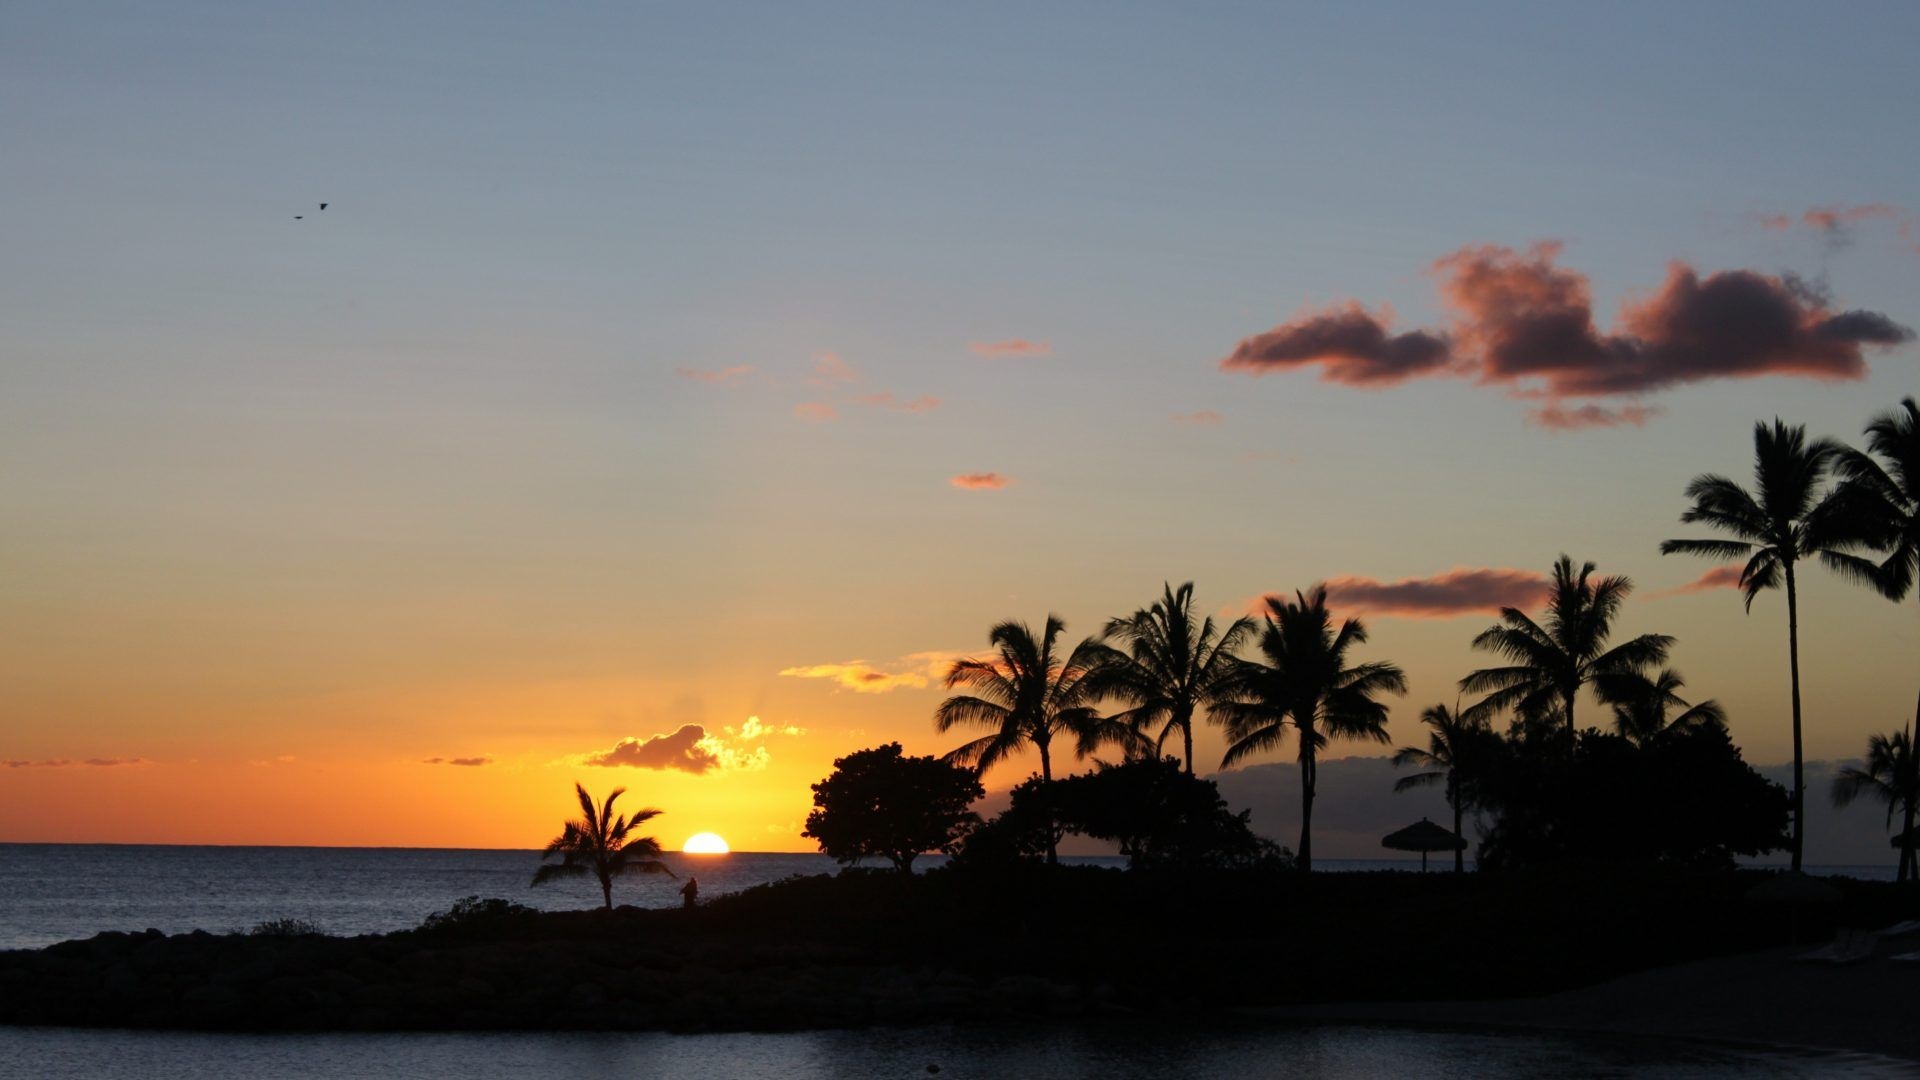 Hawaiian sunset, Beautiful beach view, Tropical paradise, Mesmerizing colors, 1920x1080 Full HD Desktop